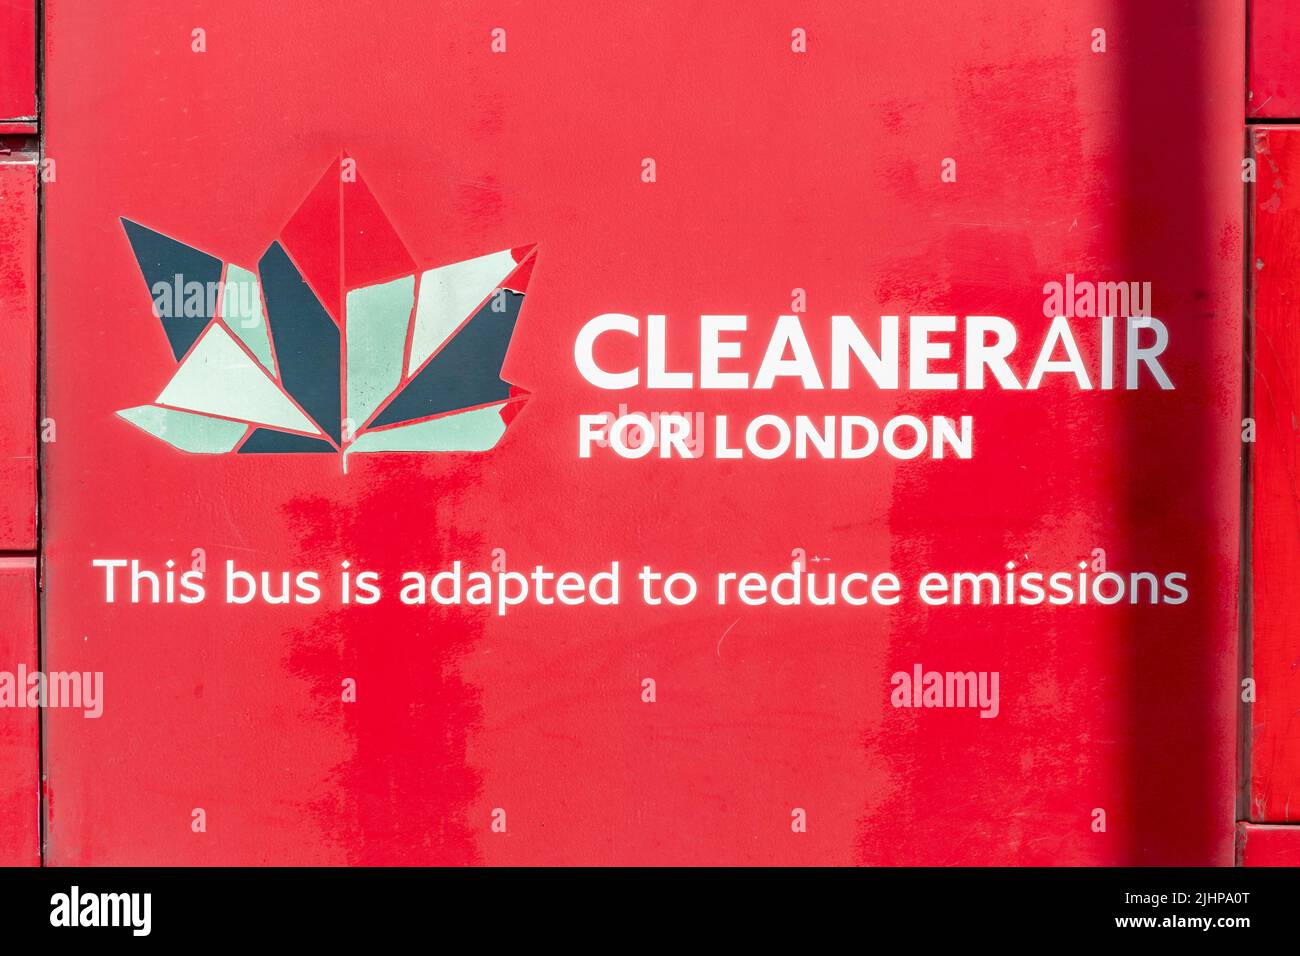 Red bus avec le slogan Air pur pour Londres sur le côté, ce bus est adapté pour réduire les émissions. Banque D'Images